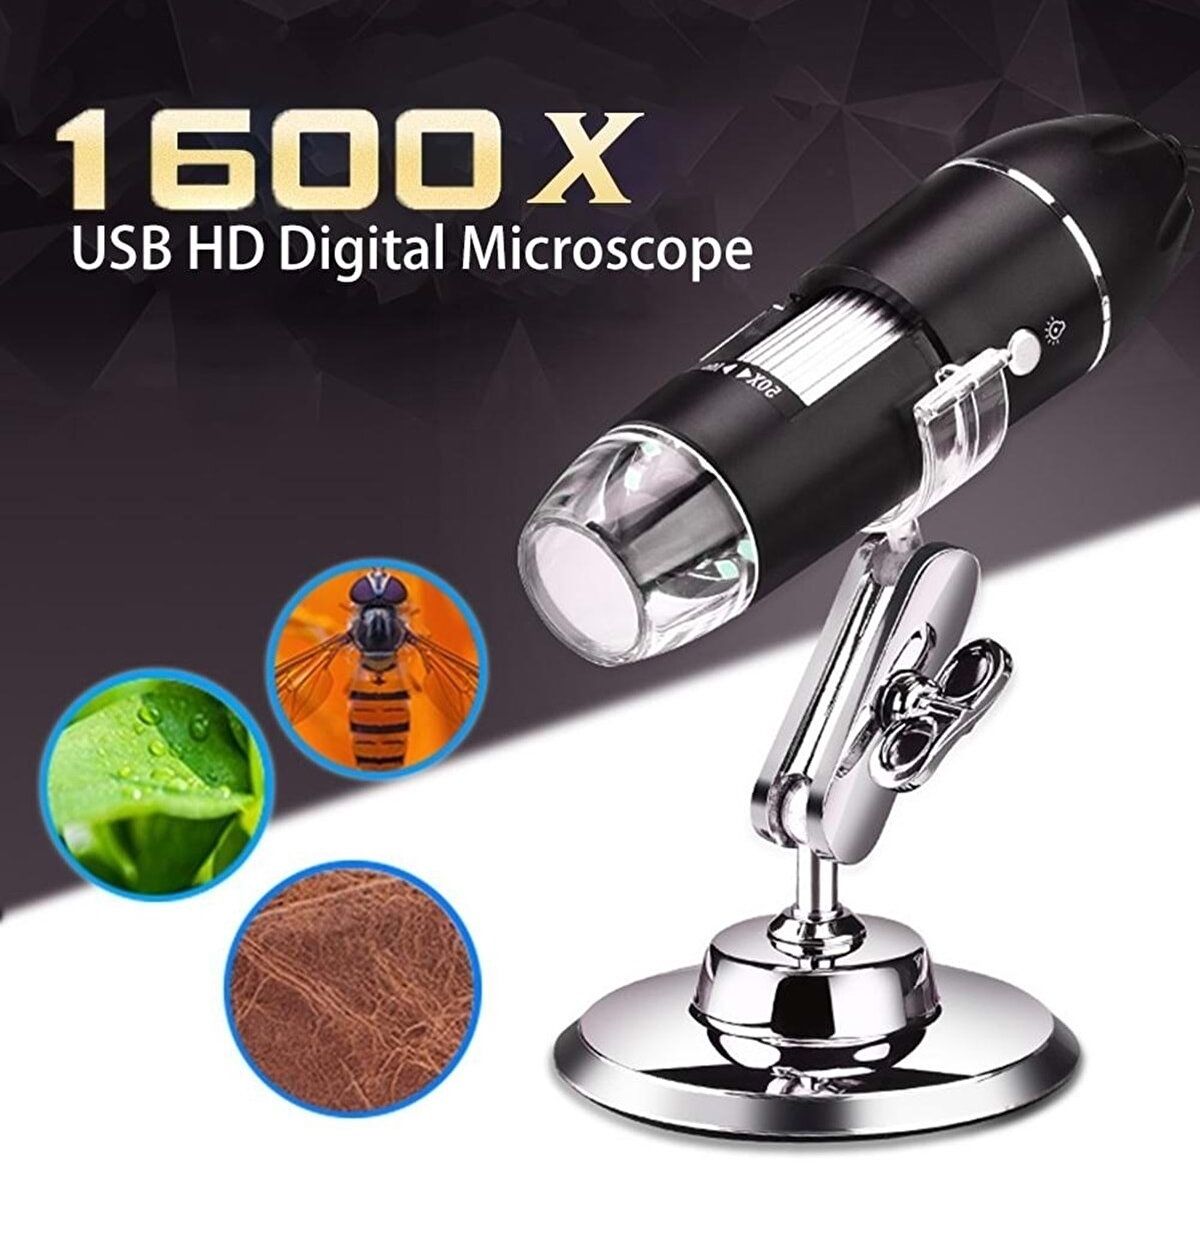 1600X Zoom 2mp USB Dijital Mikroskop 8 Ledli Kamera Telefon Tablet Bilgisayara Bağlantı